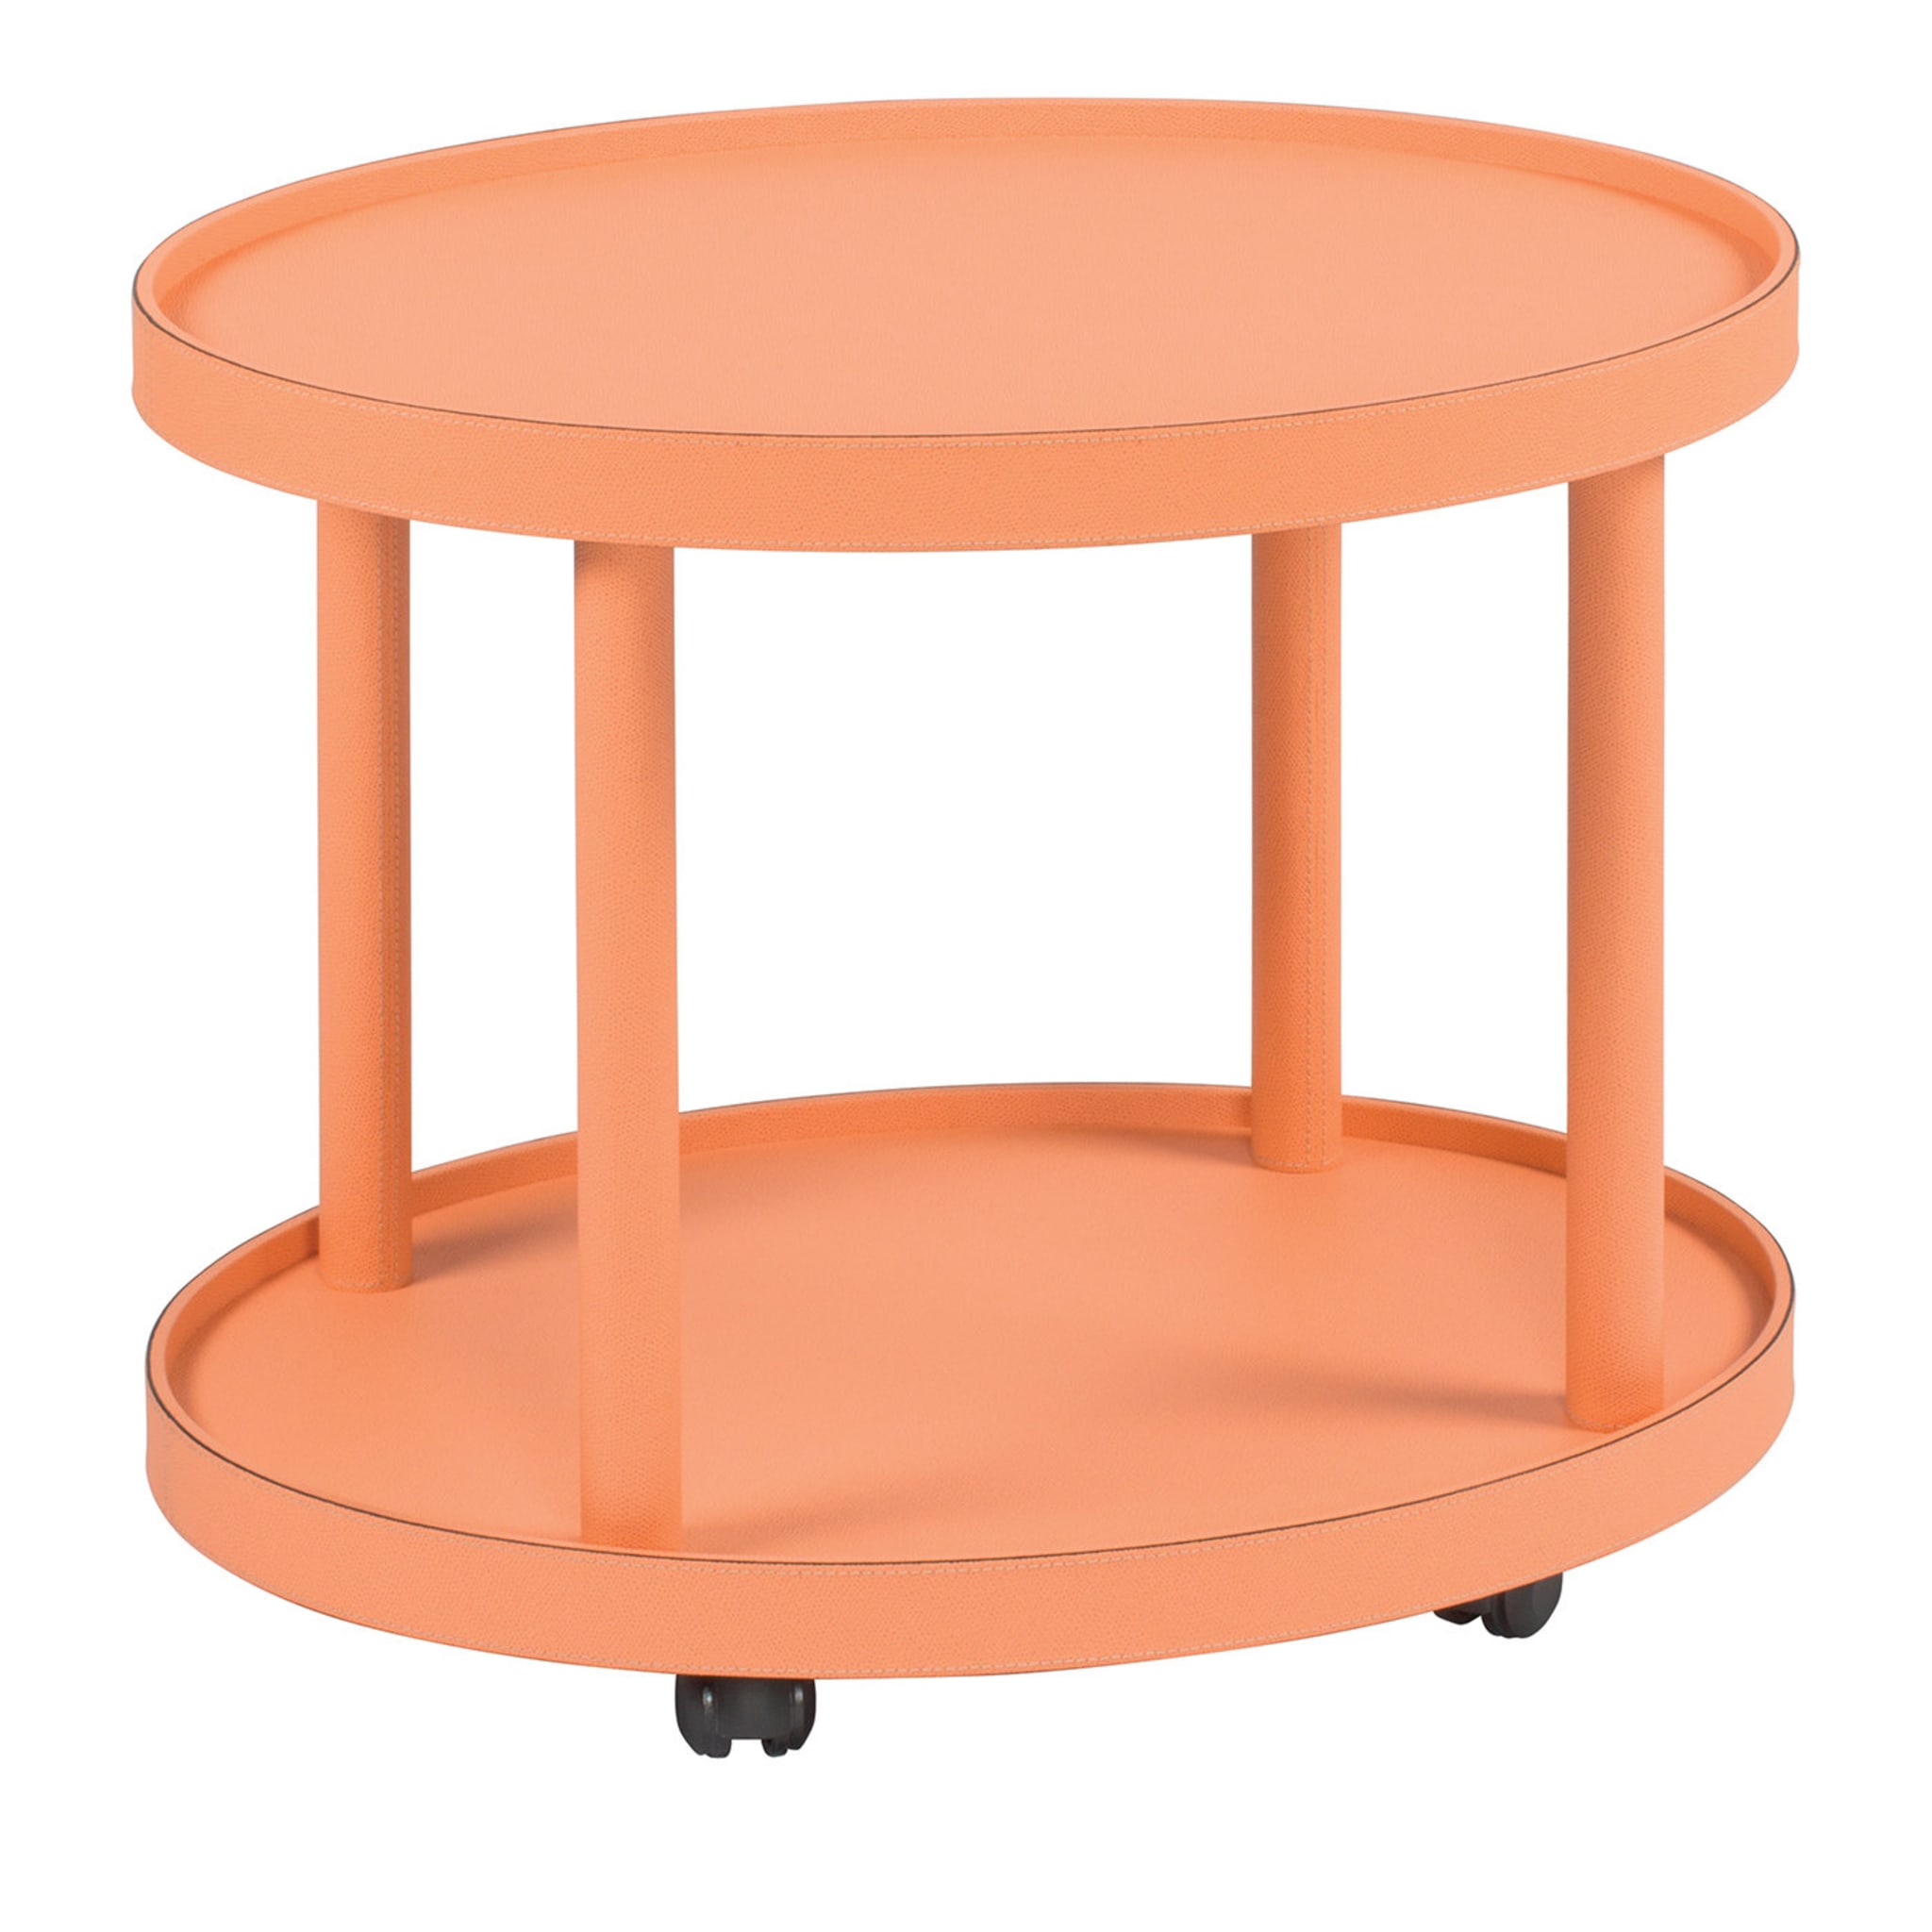 Polo Trolley 2-stöckiger lachsfarbener ovaler Tisch  - Hauptansicht